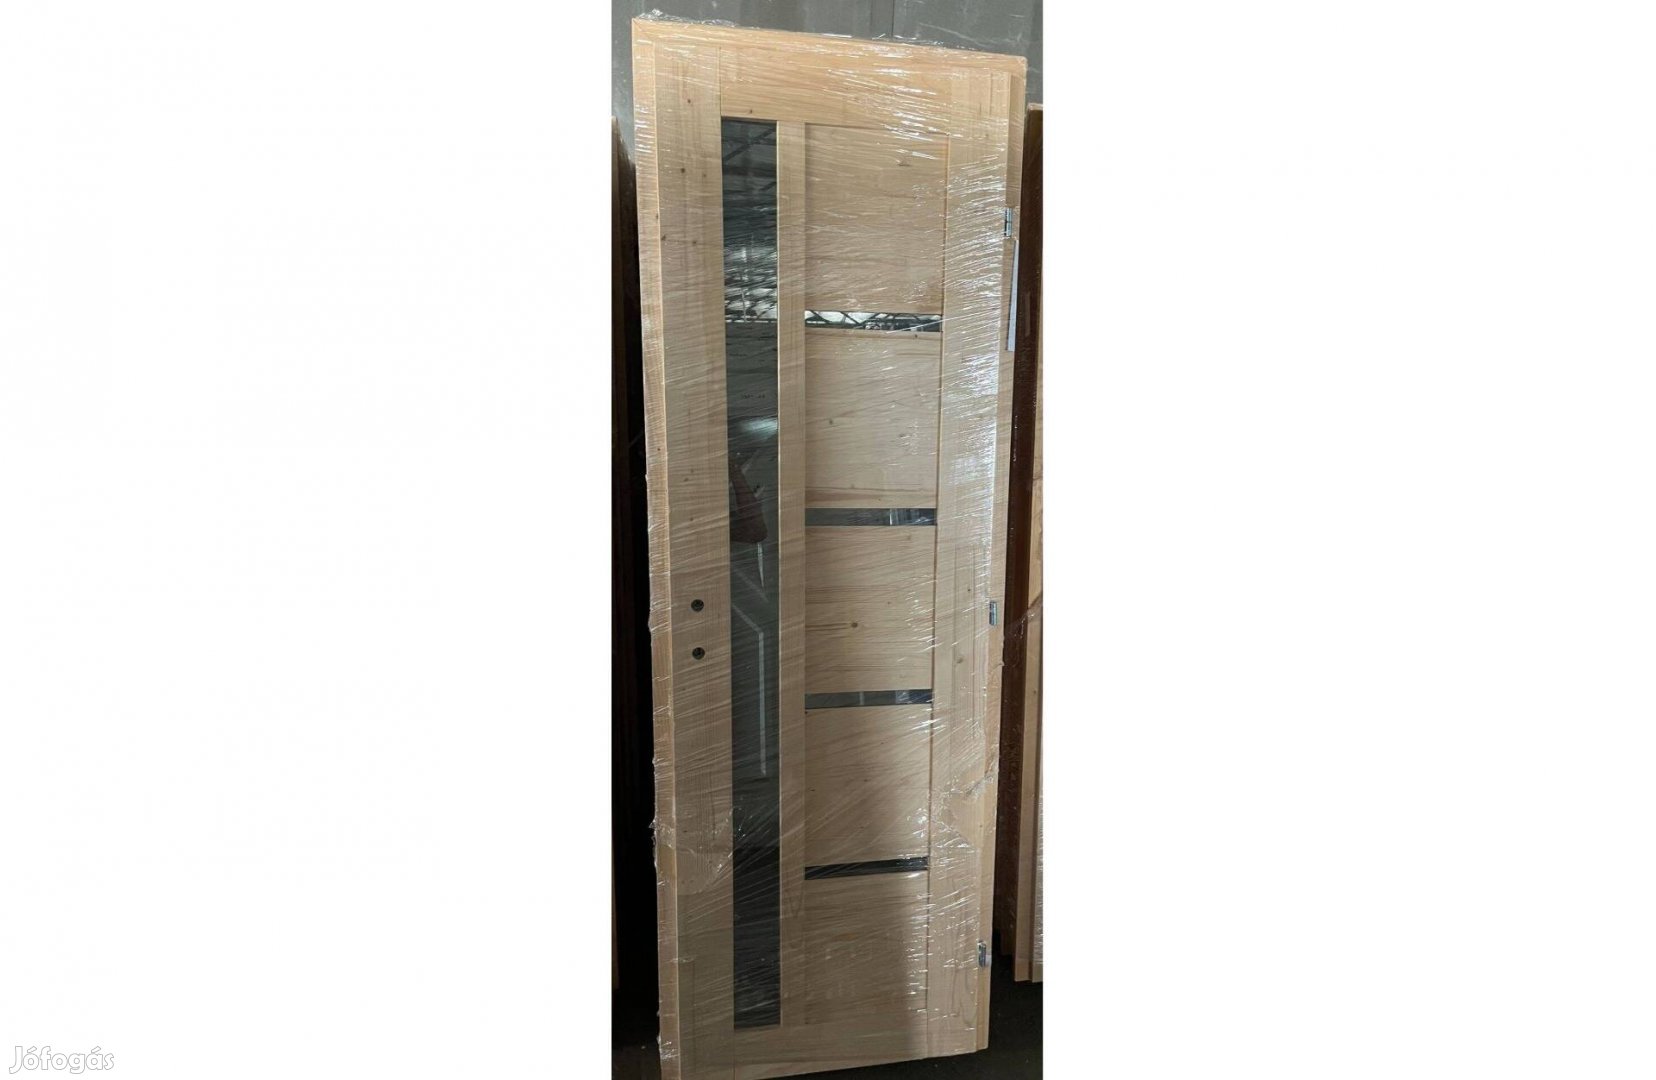 Új Fenyő (Füred) beltéri fa ajtó készletről (75x210) utolsó darabok